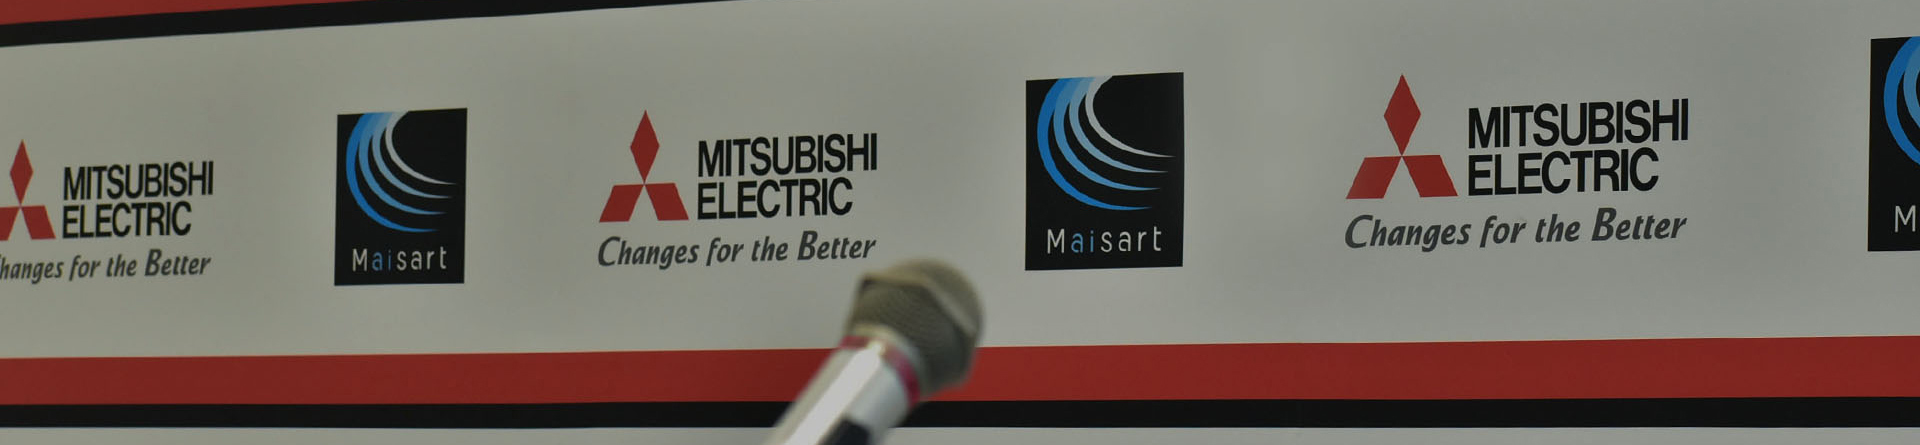 [VIDEO] Kiến tạo tương lai cùng Mitsubishi Electric và AFF SUZUKI CUP 2020